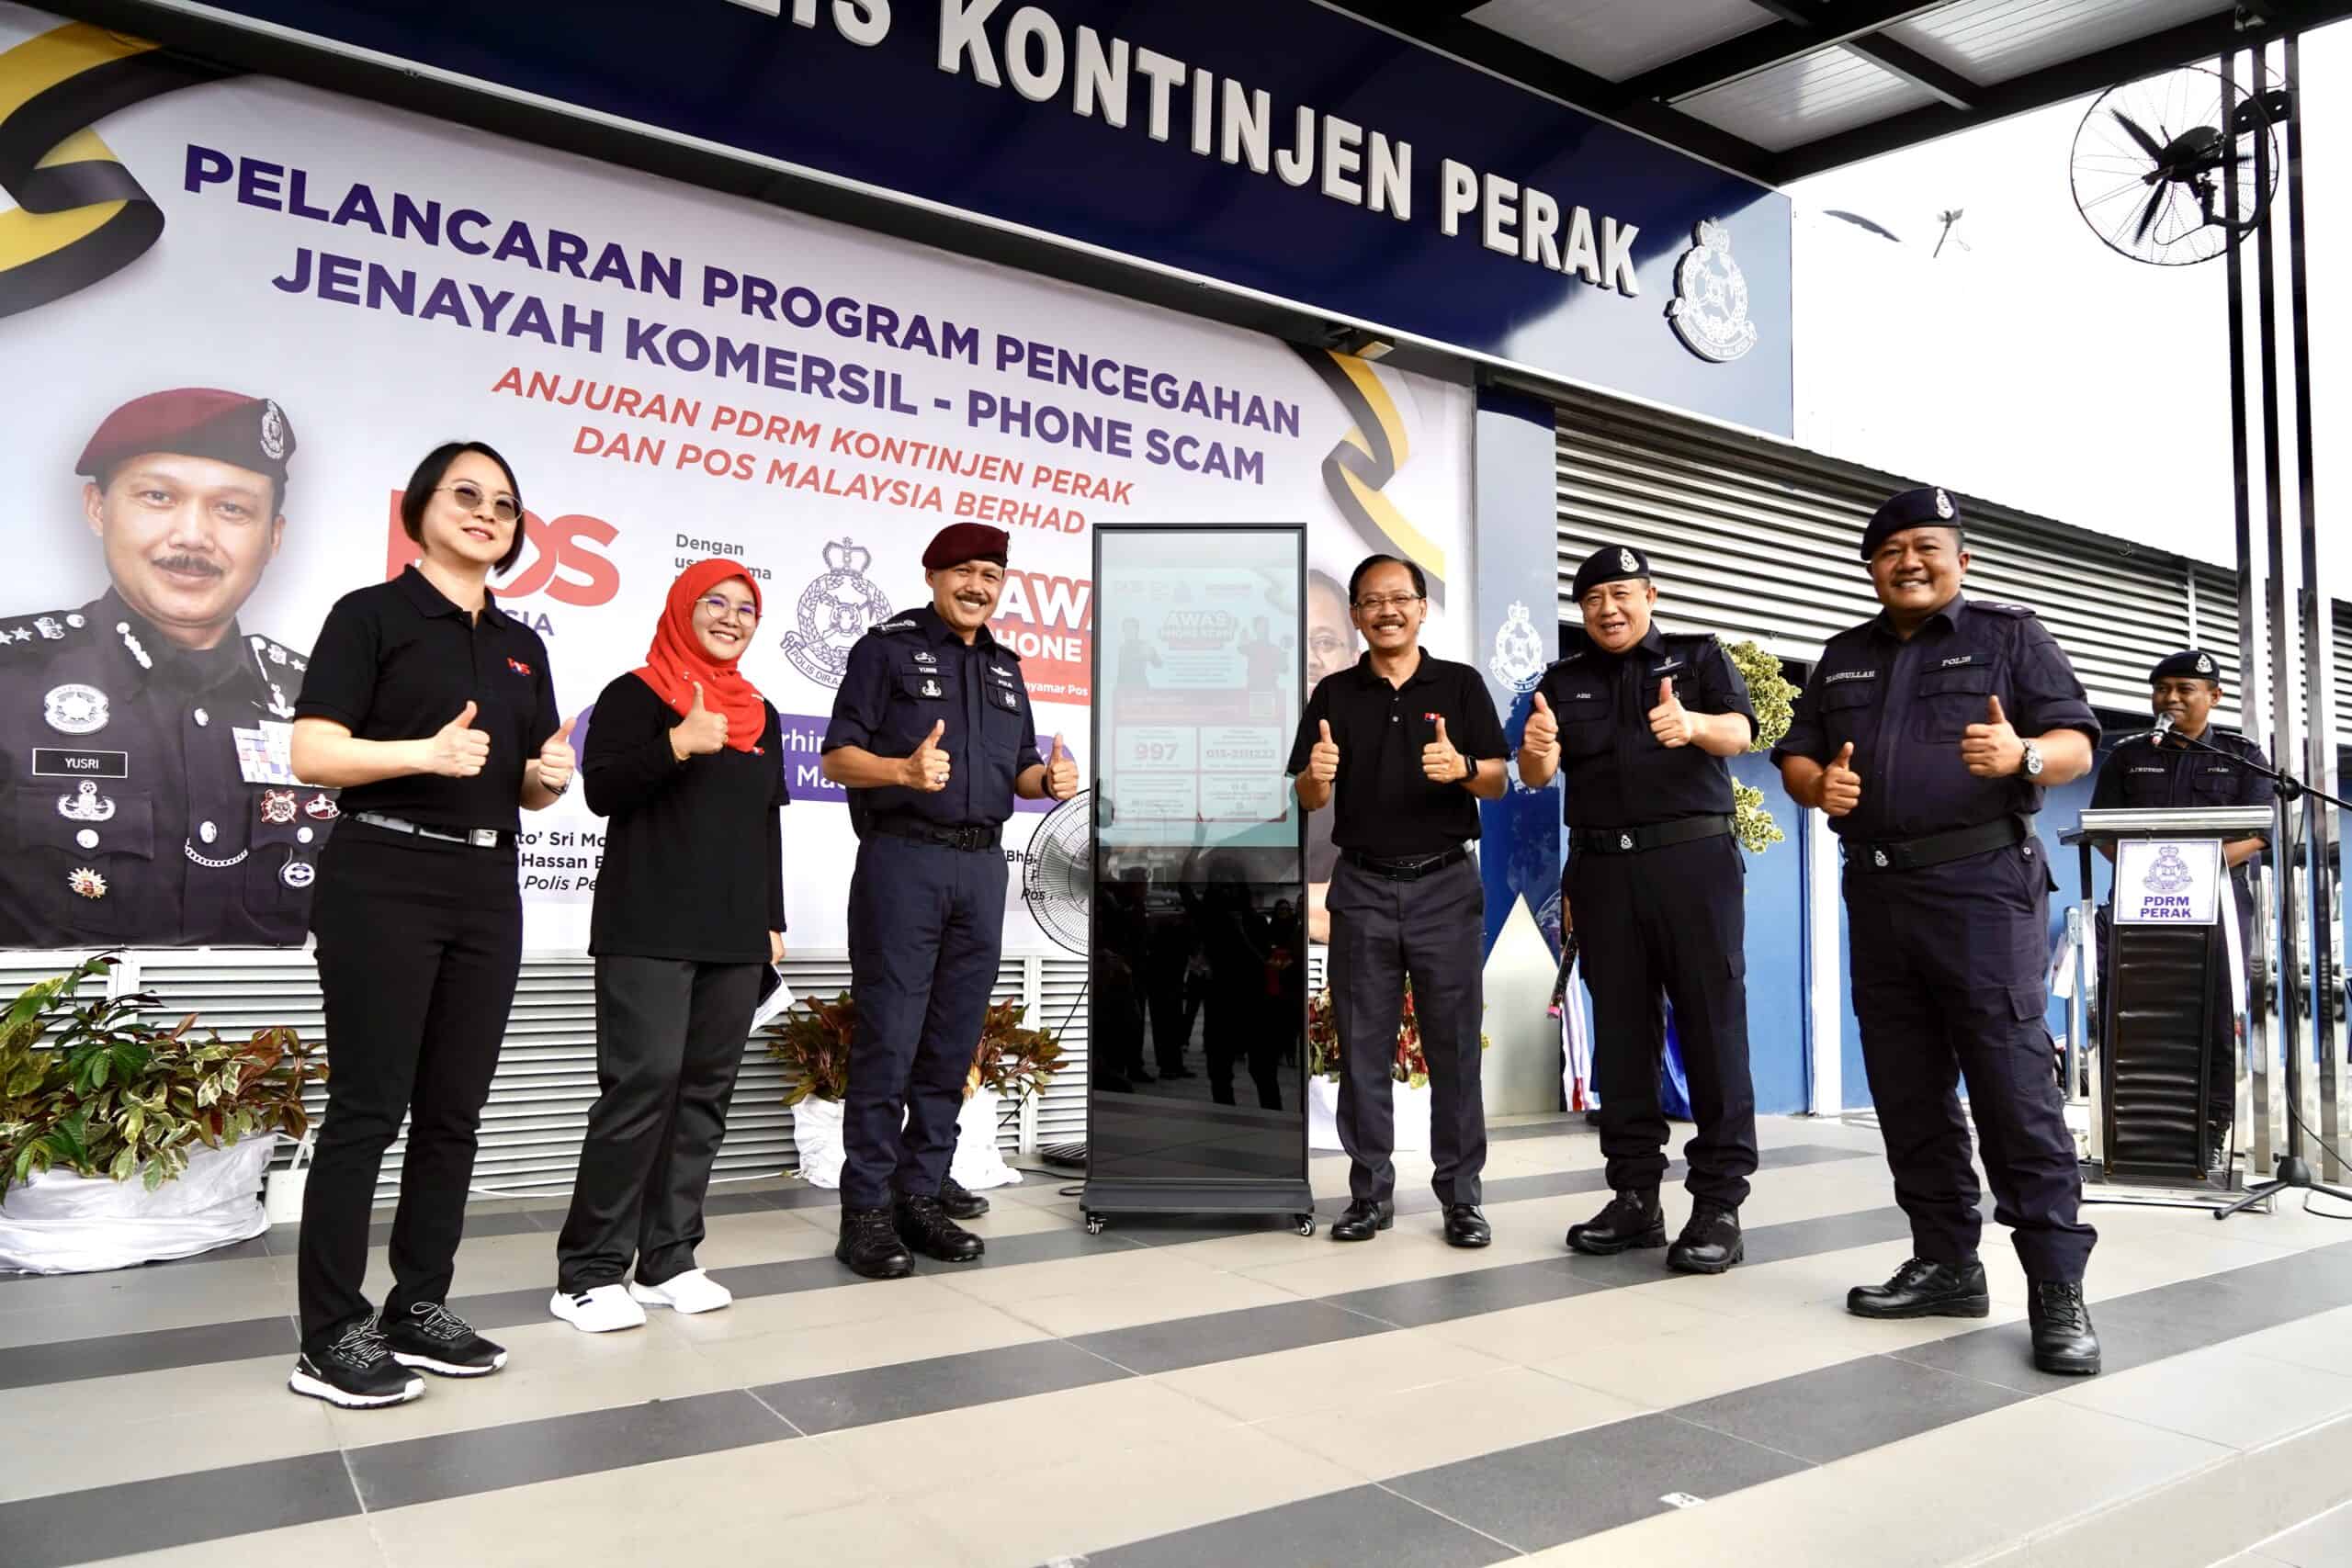 Pos Malaysia dan PDRM Perak Bekerjasama Melancarkan Program Pencegahan Jenayah Komersial - Penipuan Telefon